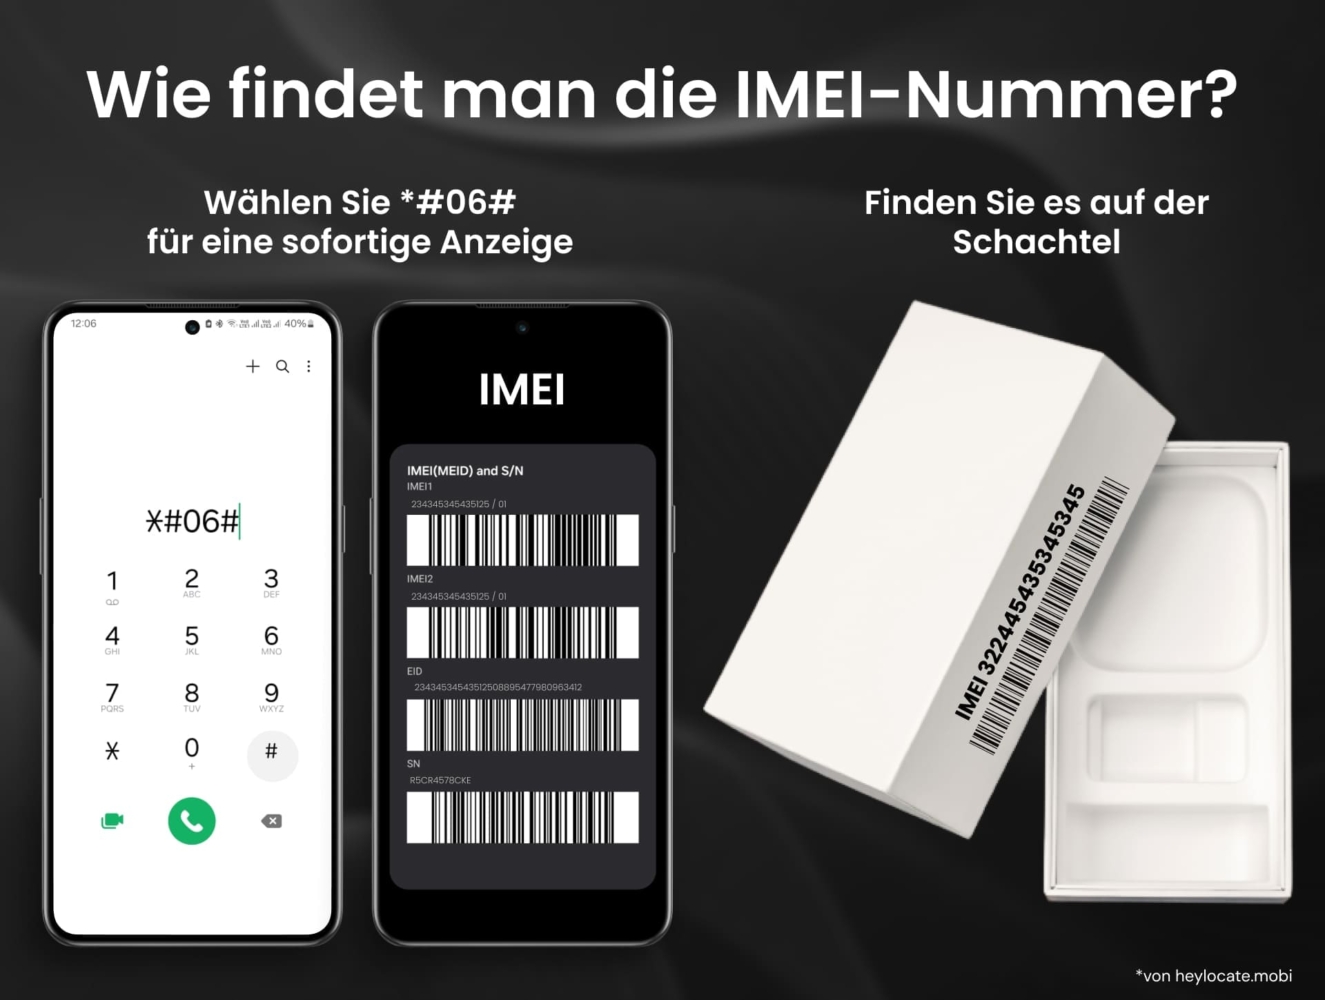 Zwei Methoden, um die IMEI-Nummer eines Mobiltelefons zu finden. Die linke Seite zeigt ein Smartphone mit geöffneter Wähltastatur, auf der der Code *#06# markiert ist, um die IMEI-Nummer direkt auf dem Bildschirm abzurufen. Die rechte Seite zeigt eine Mobiltelefonbox mit aufgedruckter IMEI-Nummer